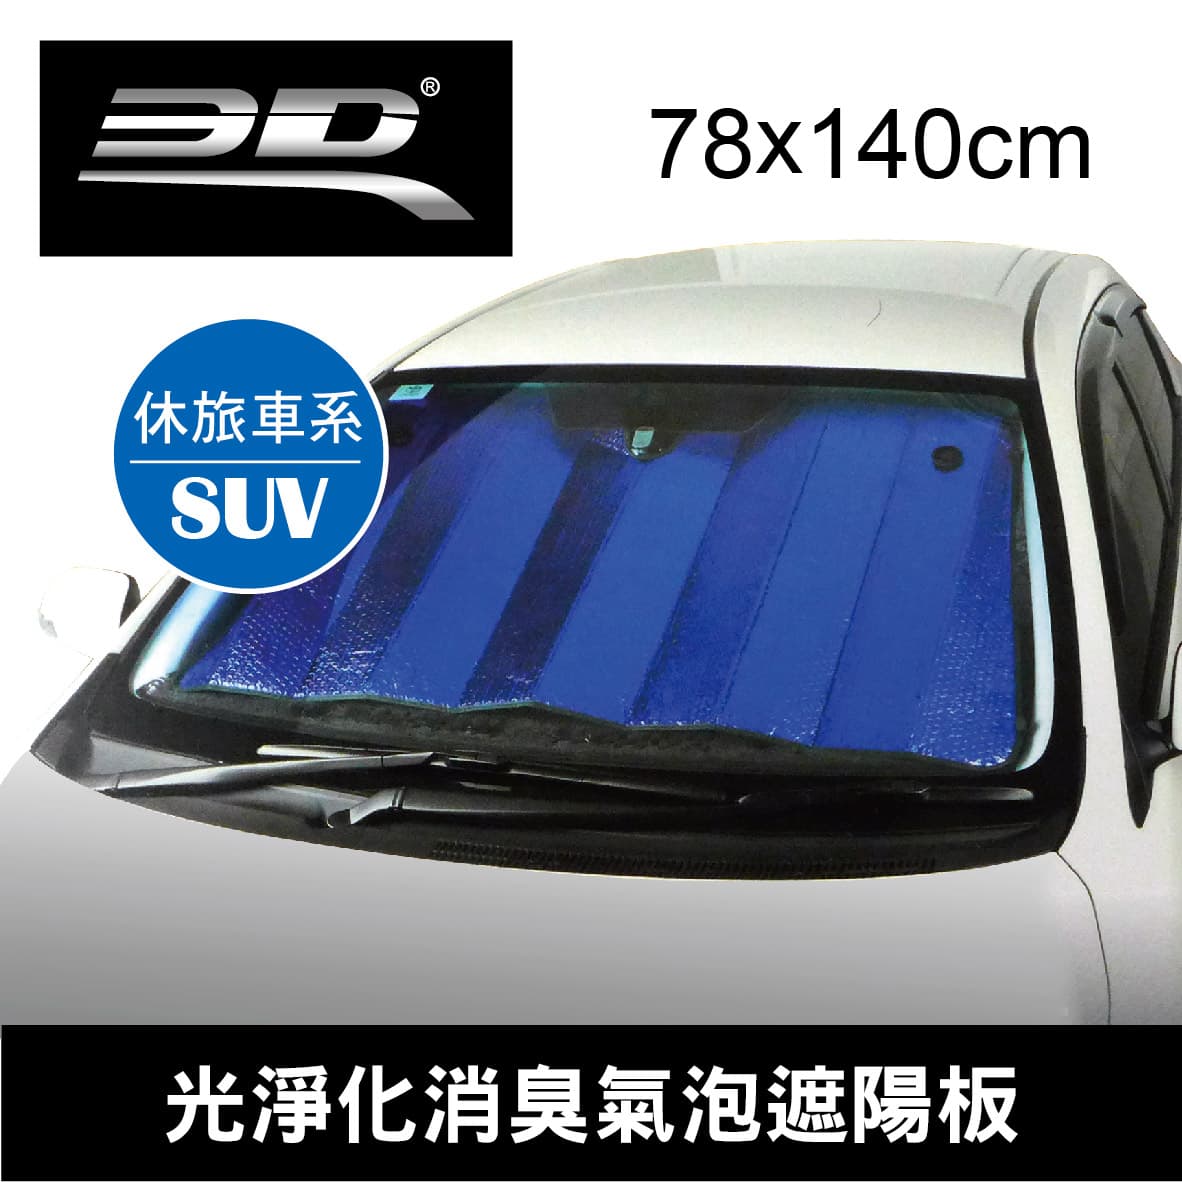 真便宜 3D 4632 光淨化消臭氣泡遮陽板140x78cm(SUV車型)